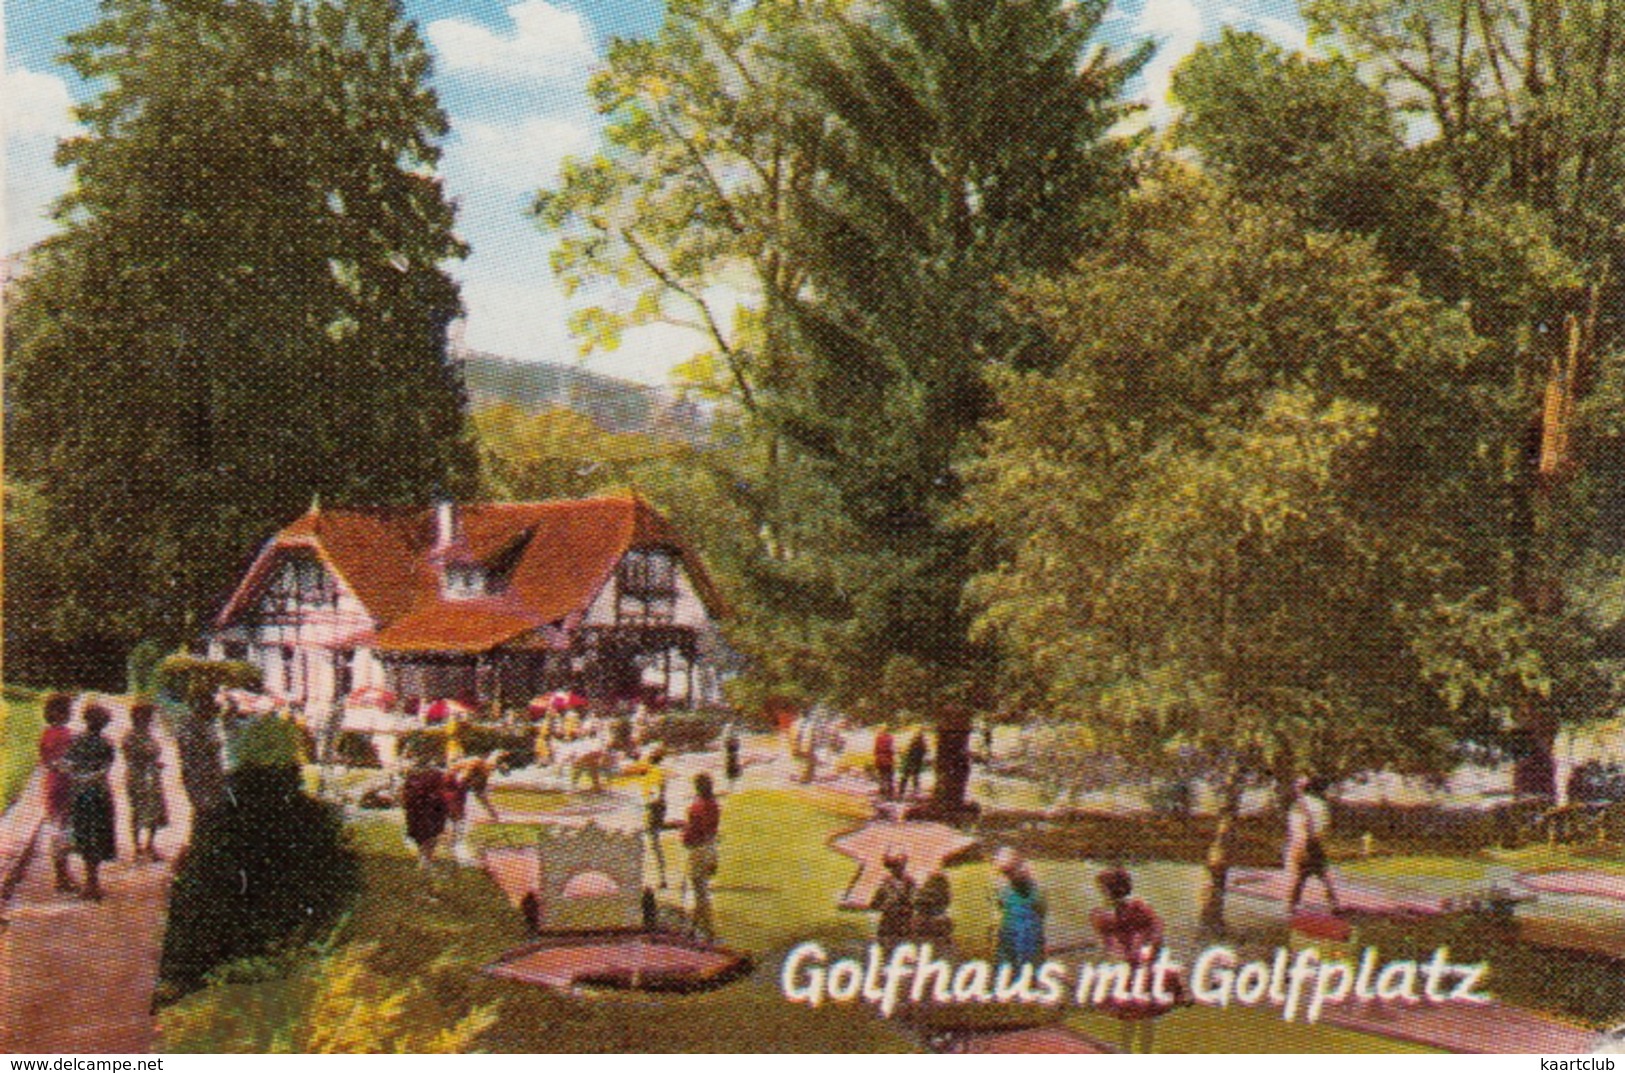 Bad Schwalbach Im Taunus - Kurhotel, Stahlbrunnen, Moor-Badehaus, Golfhaus Mit Golfplatz - MINIGOLF- Usw. - Bad Schwalbach